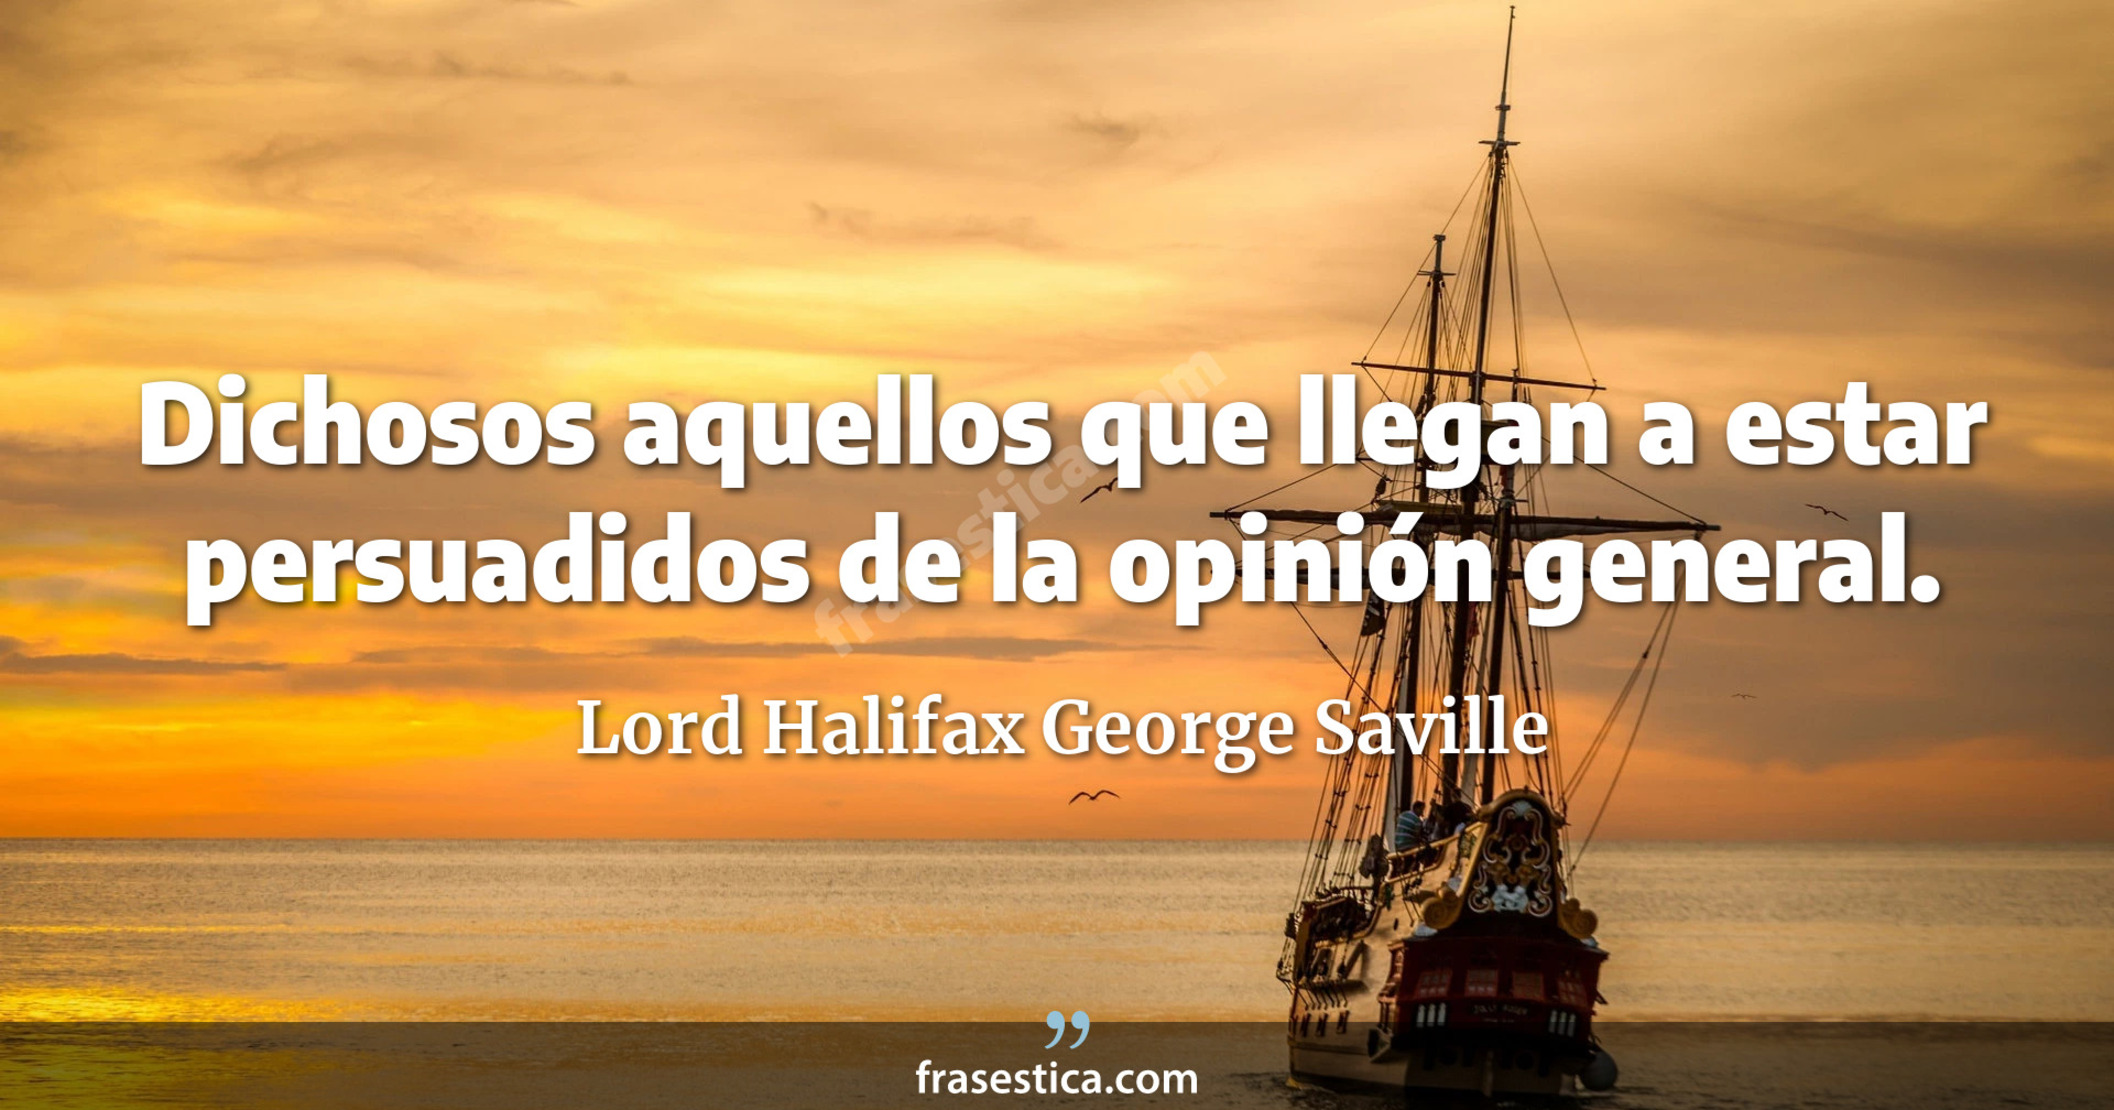 Dichosos aquellos que llegan a estar persuadidos de la opinión general. - Lord Halifax George Saville